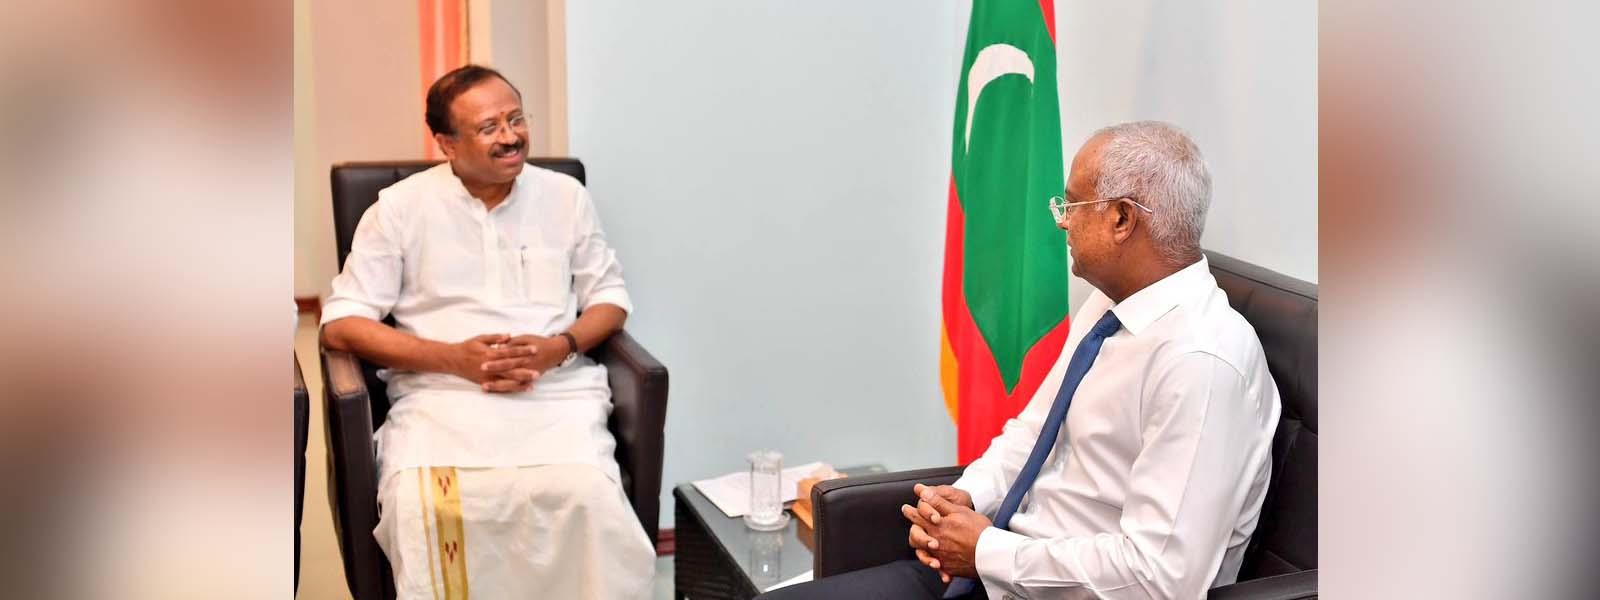 Minister of State for External Affairs Shri V. Muraleedharan called on the President of Maldives H.E Mr. Ibrahim Mohamed Solih in Male